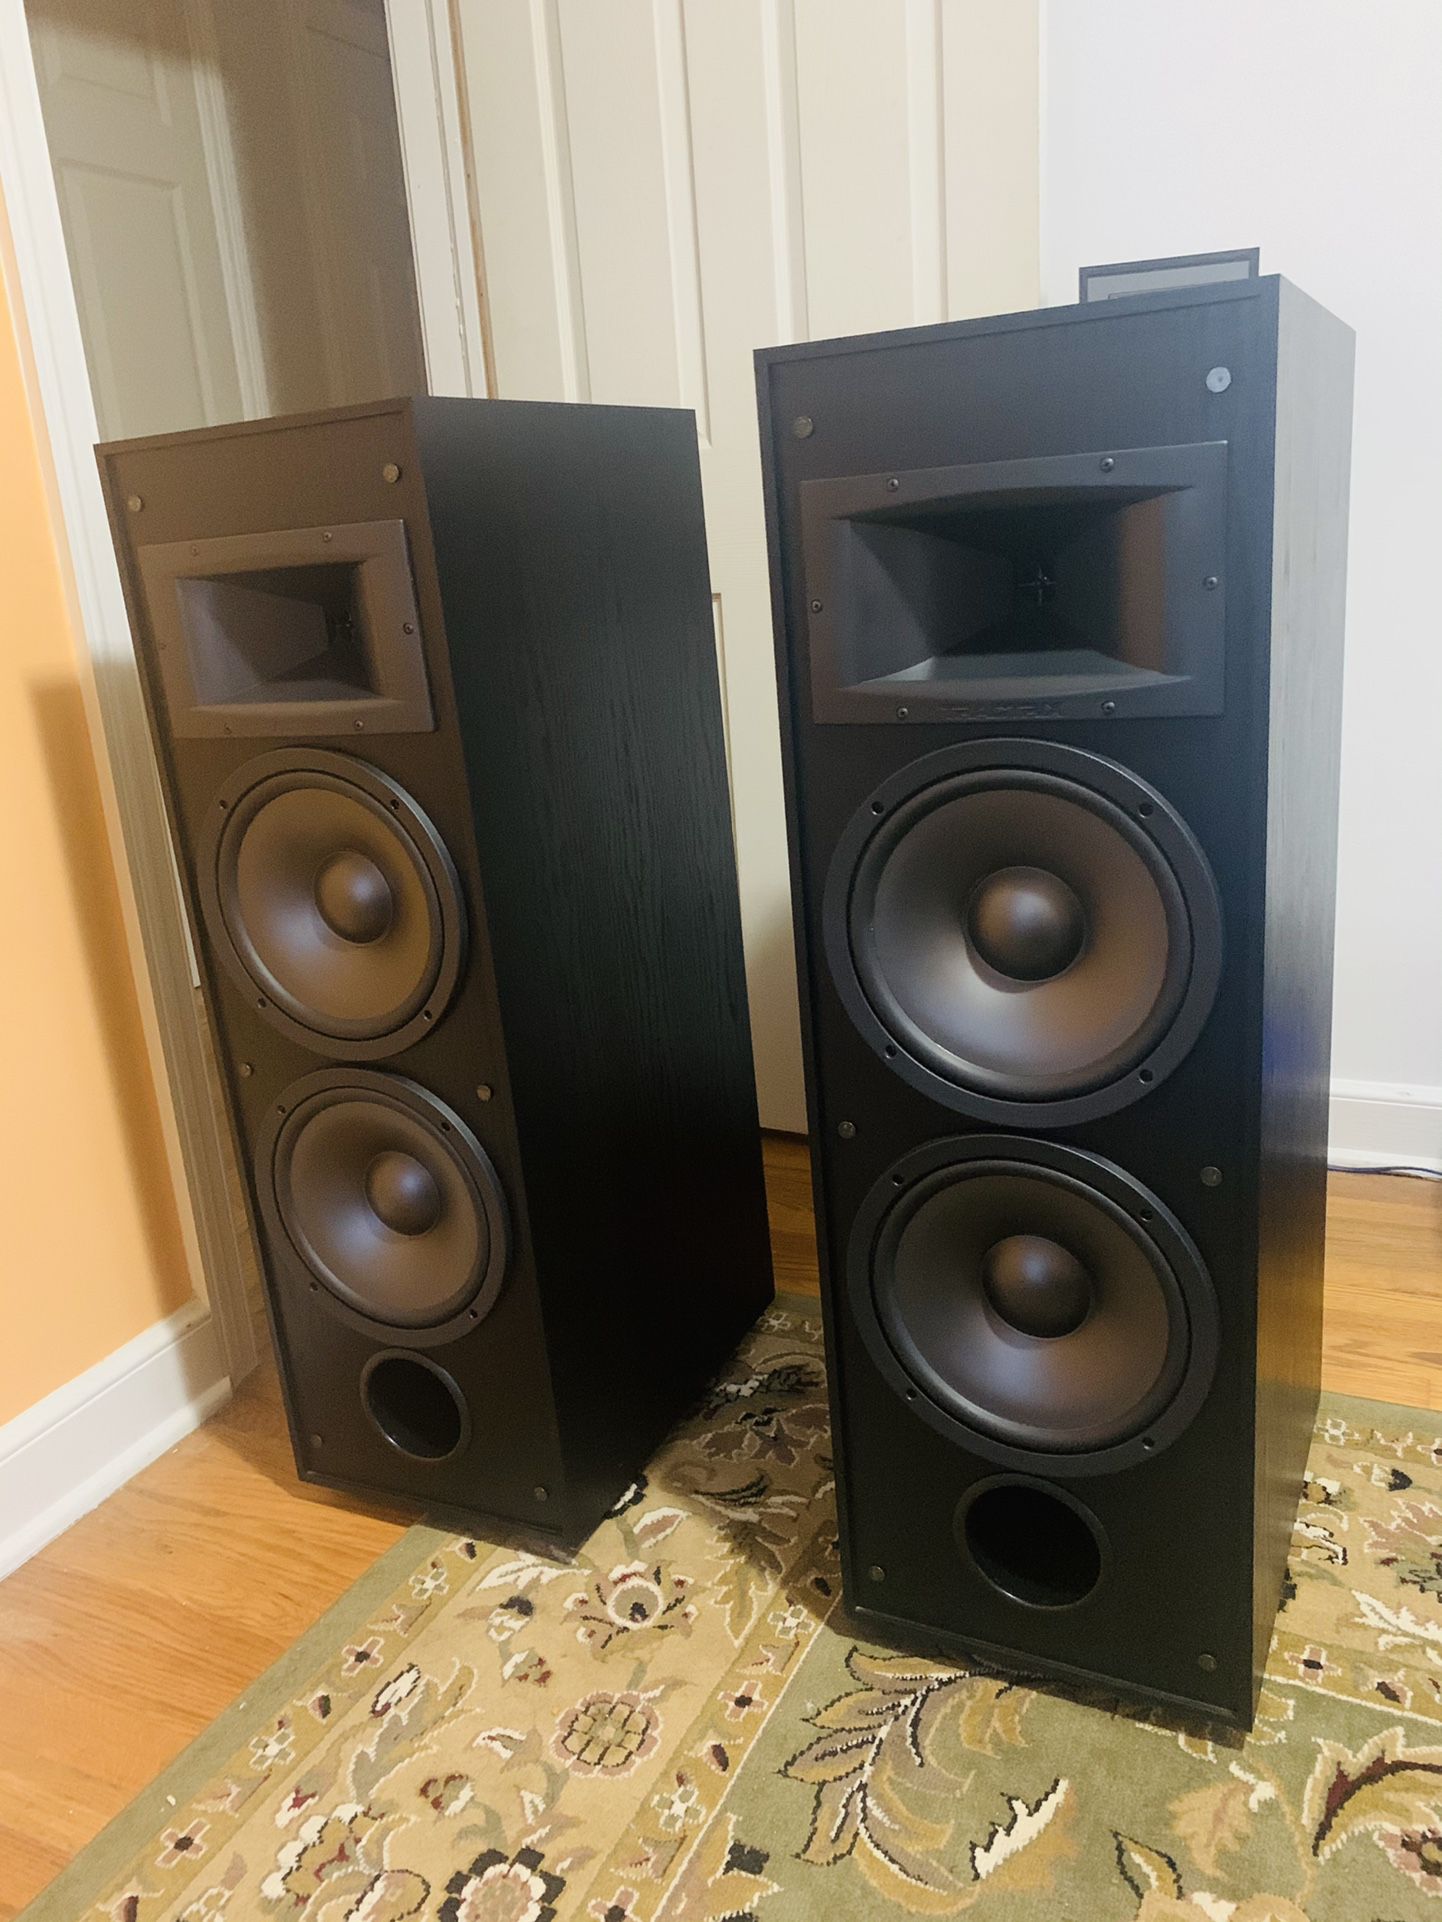 A pair of Klipsch KG 5.5 floorstanding speakers